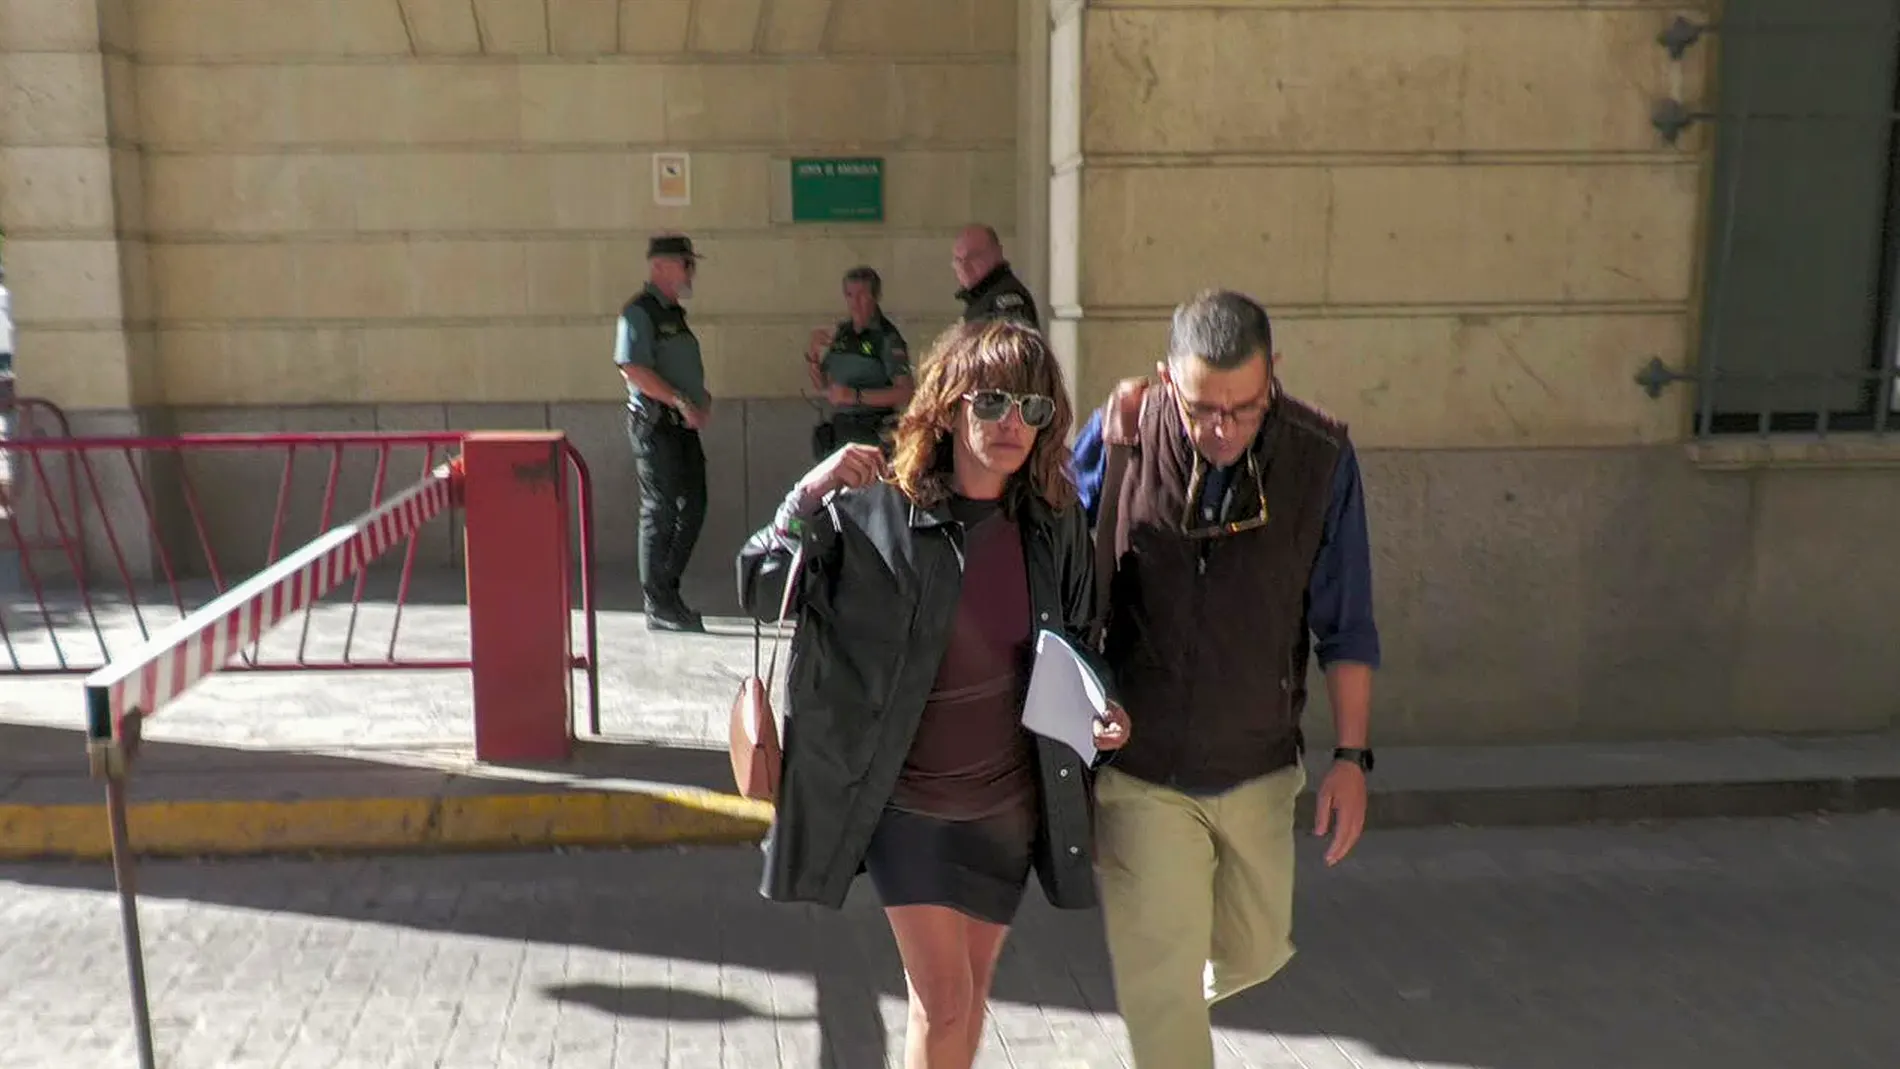 María León se pronuncia tras su detención: "Niego haber agredido a nadie. He sido víctima de un abuso policial"